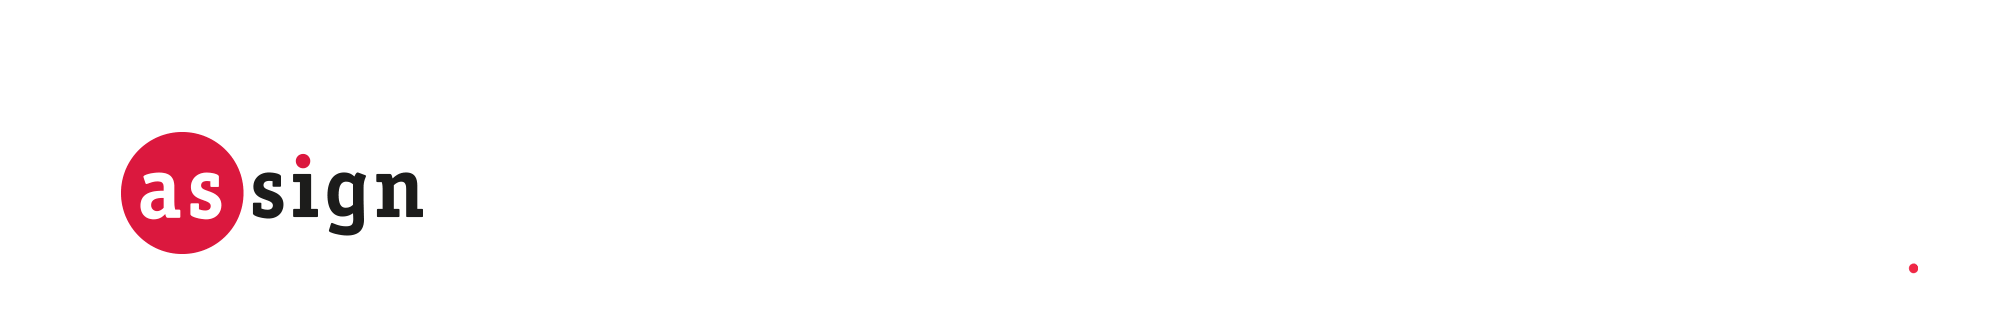 Logo AsSign englisch